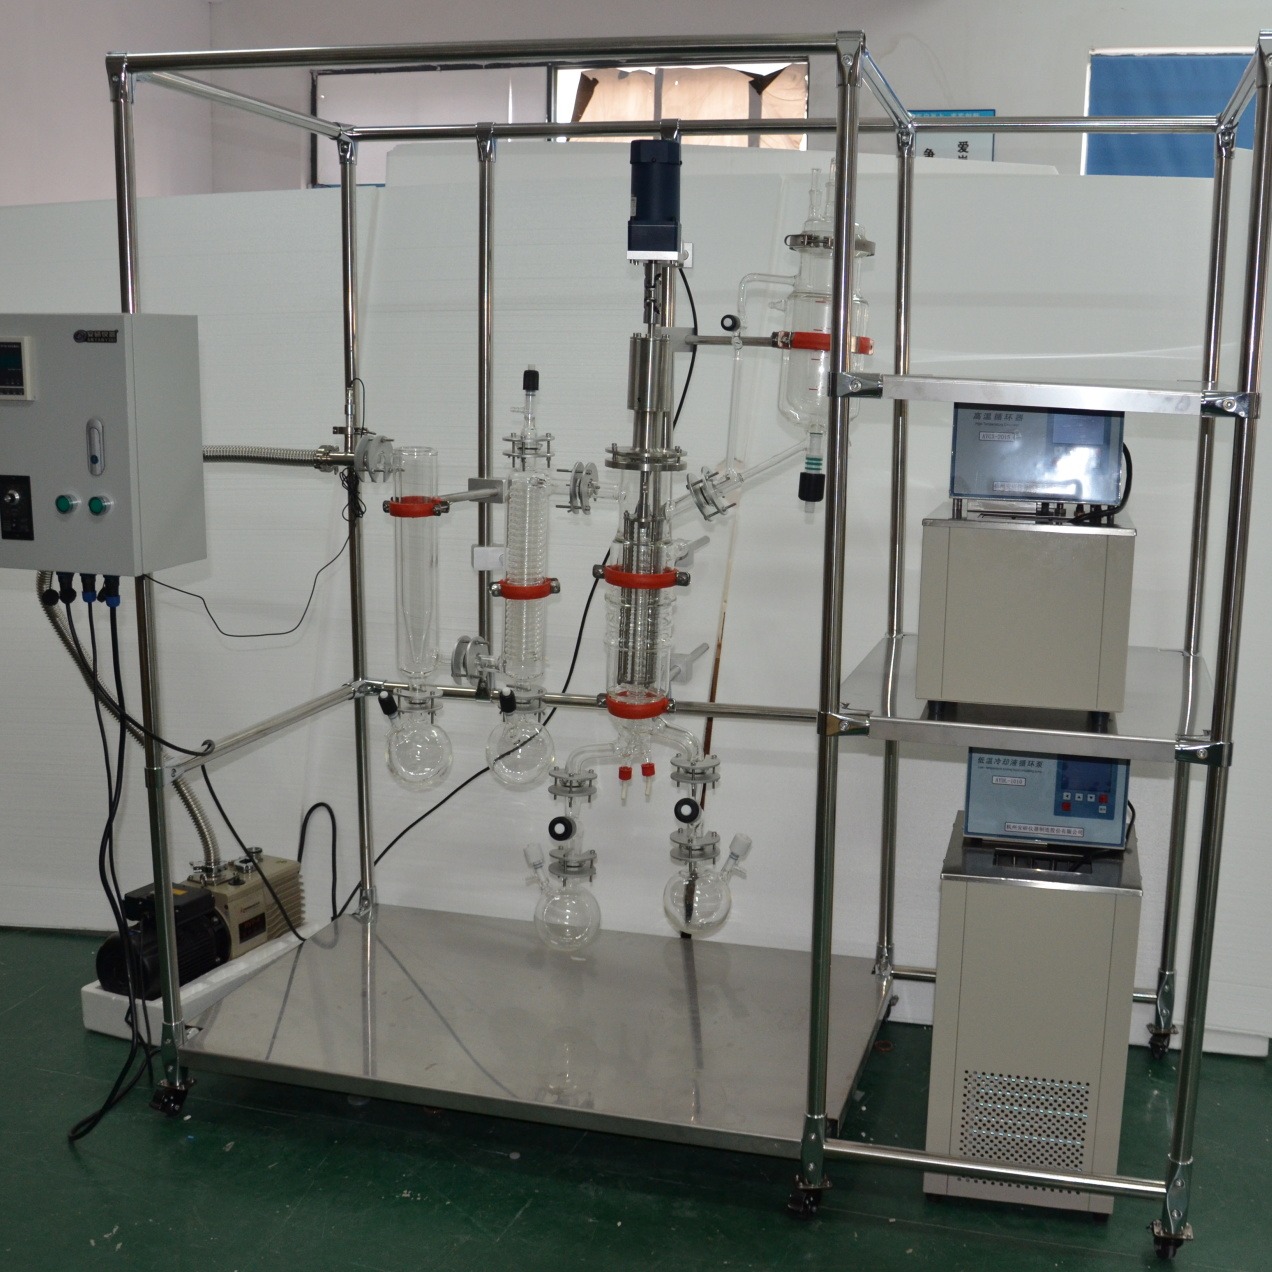 cbd分子蒸馏 薄膜分子蒸馏 玻璃分子蒸馏生产厂家 AYAN-F80 杭州安研 出口质量 专业生产各类实验仪器制造商图片